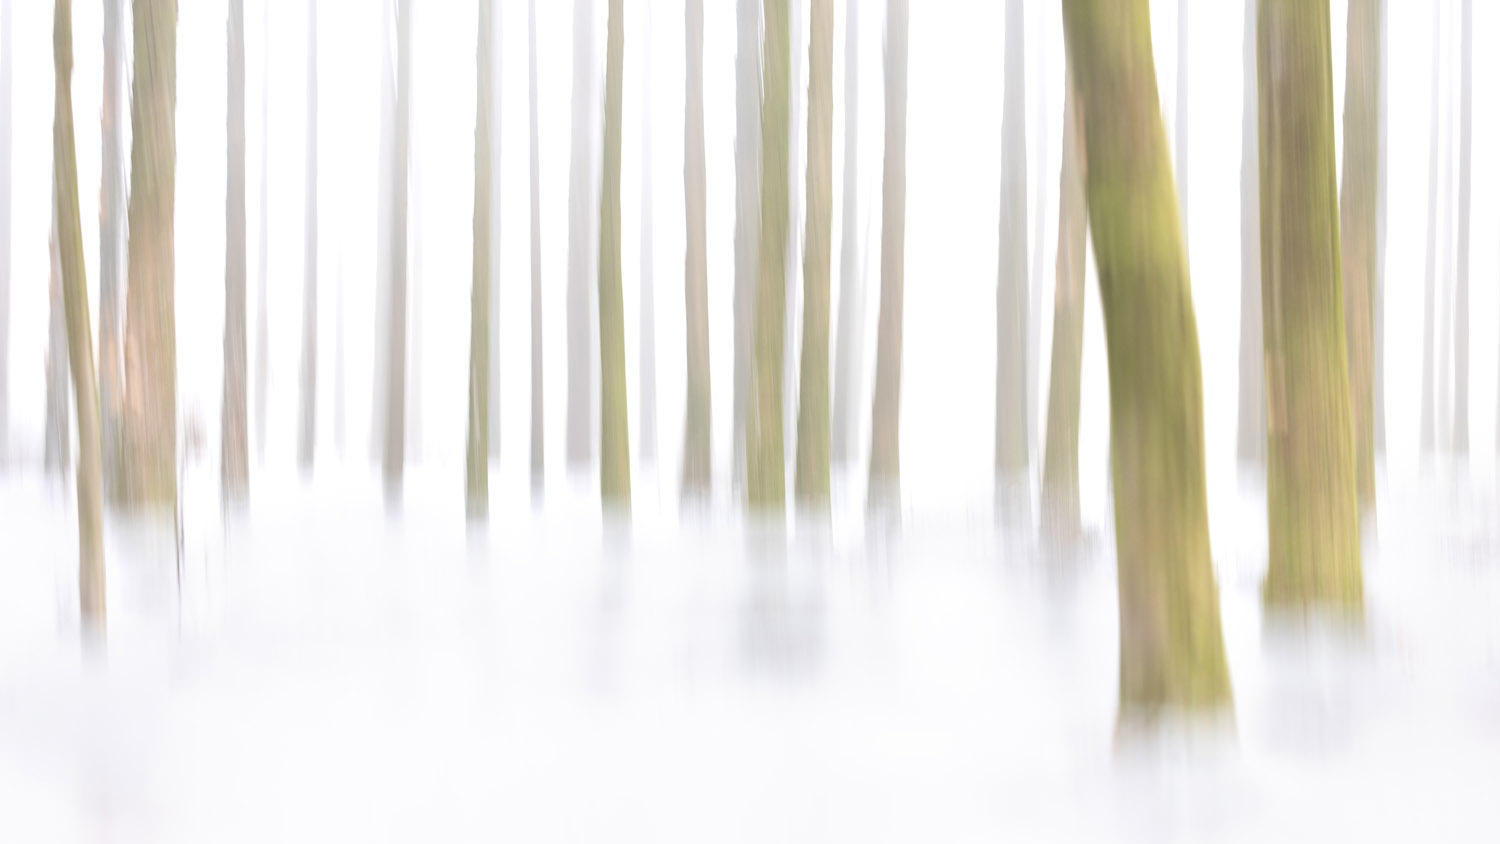 Ghostely Trees by Karen Ketels